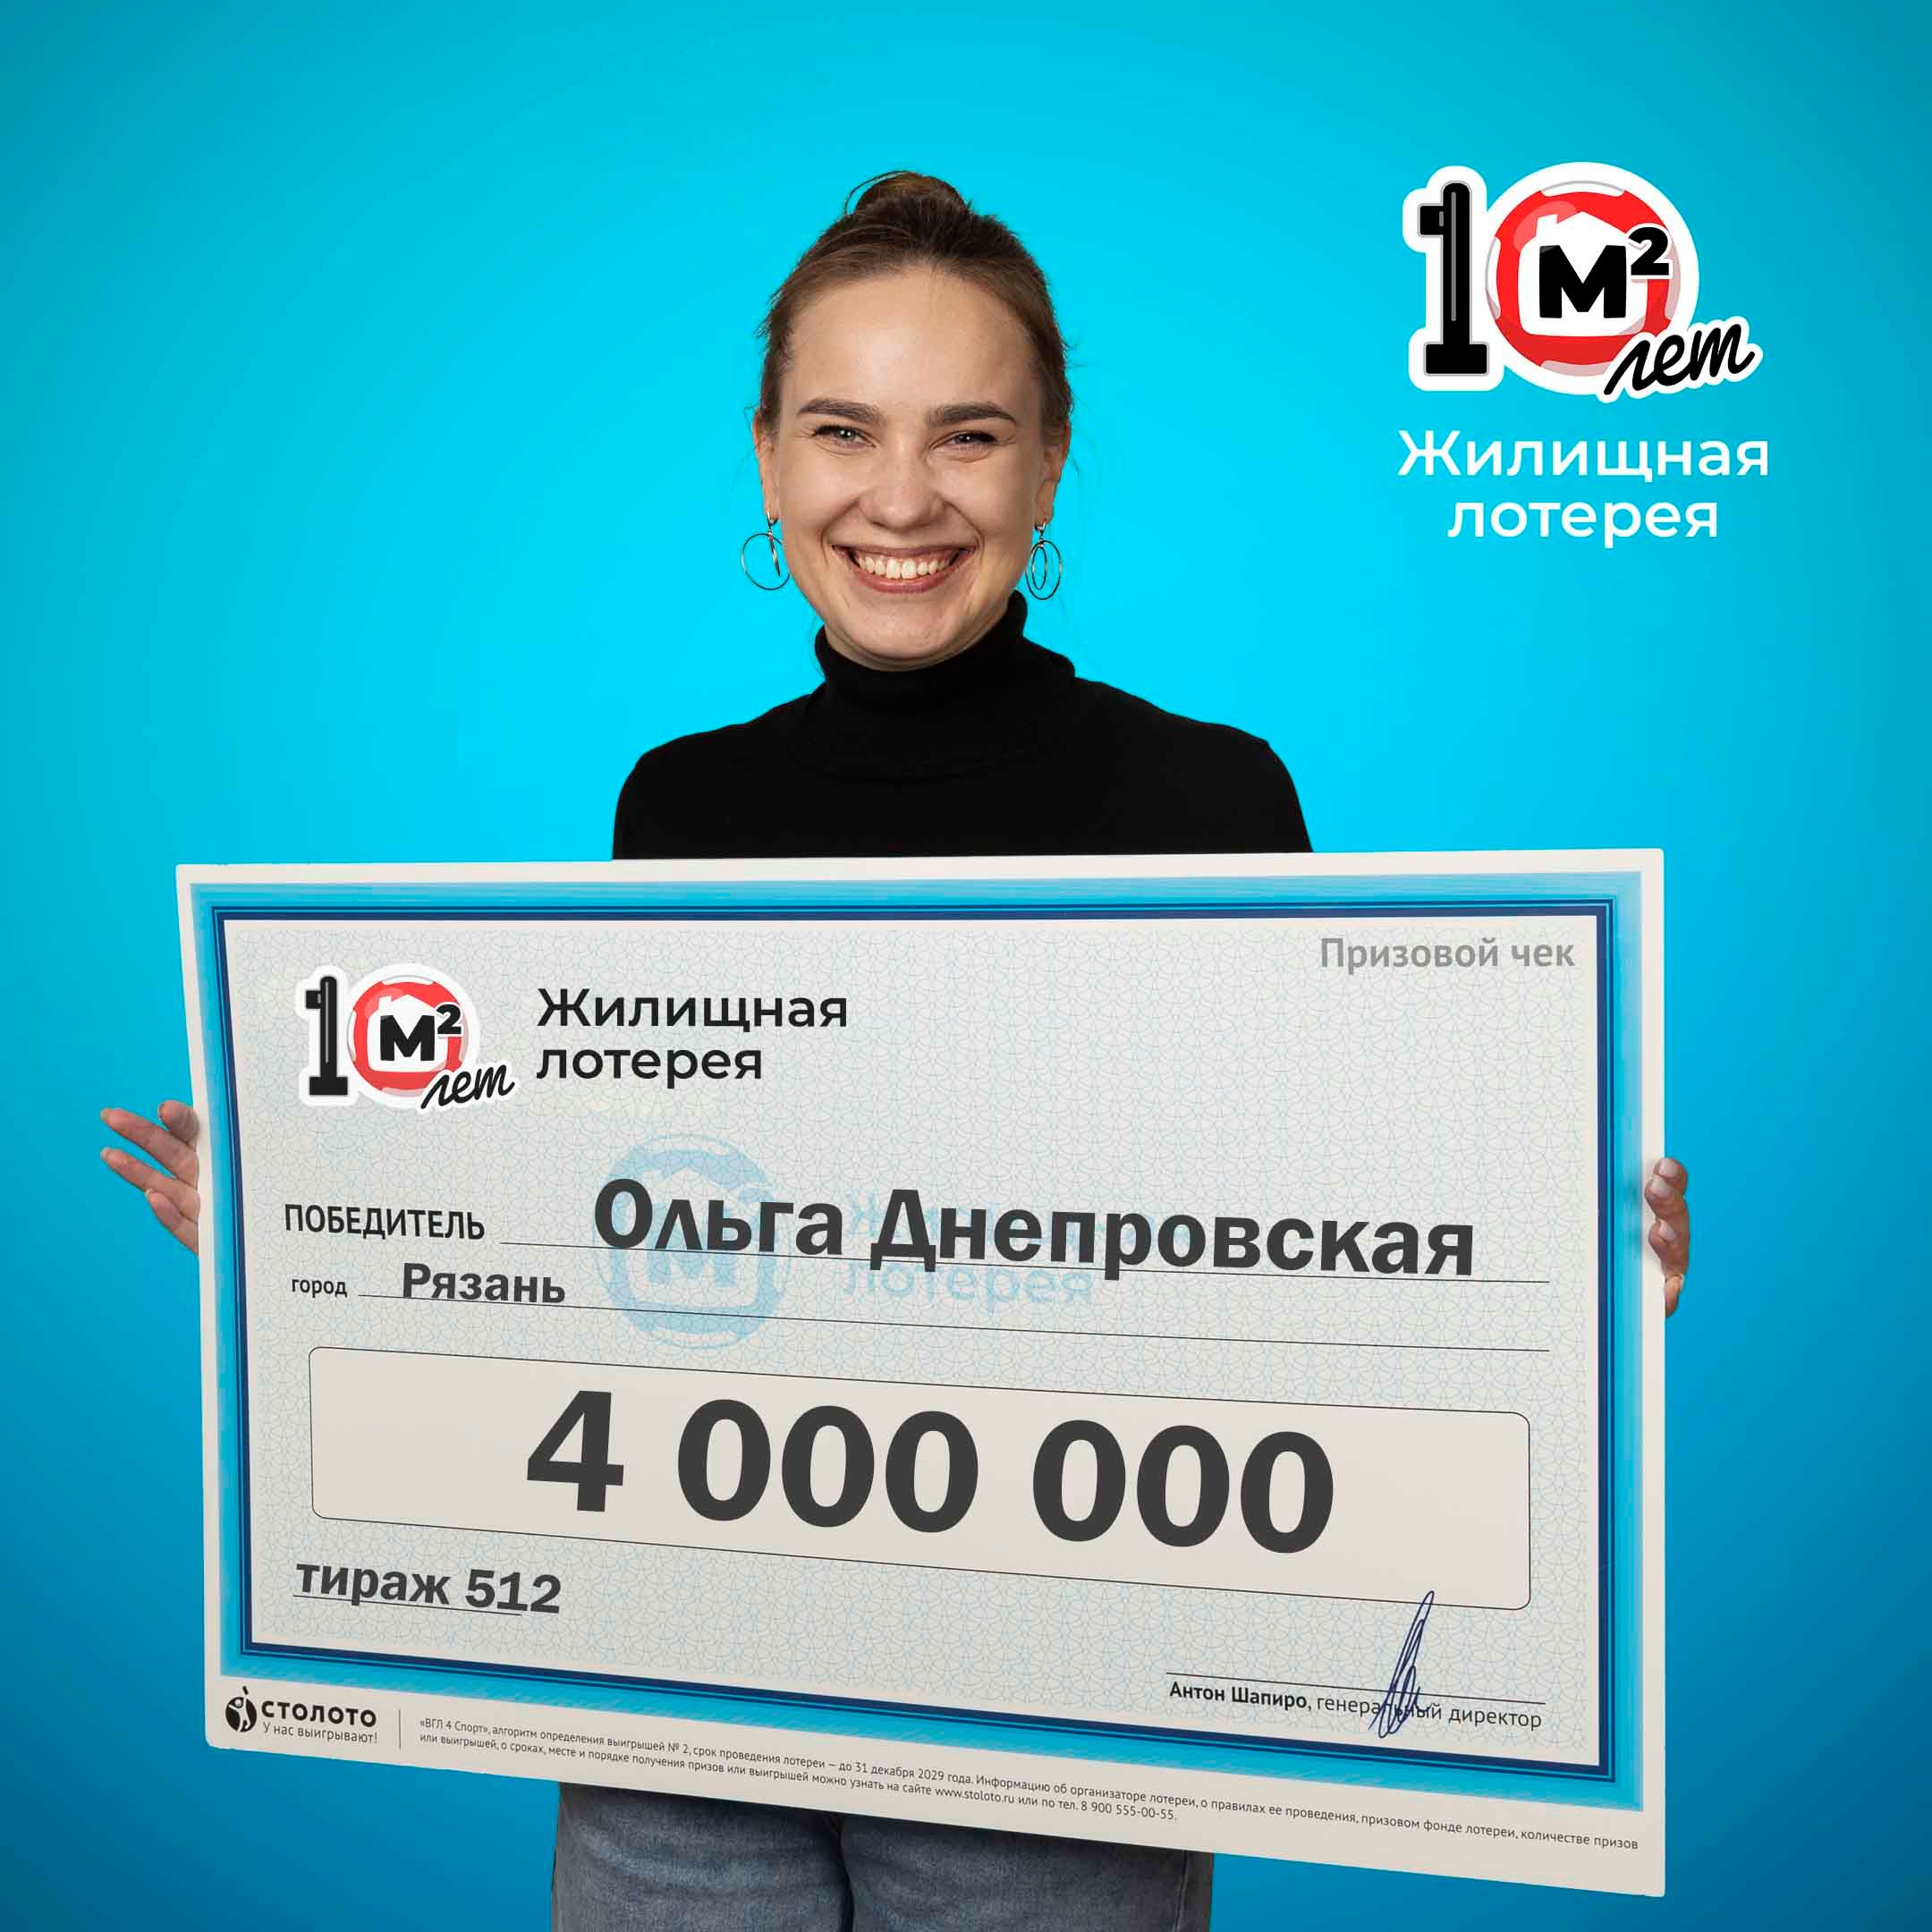 Ольга Днепровская